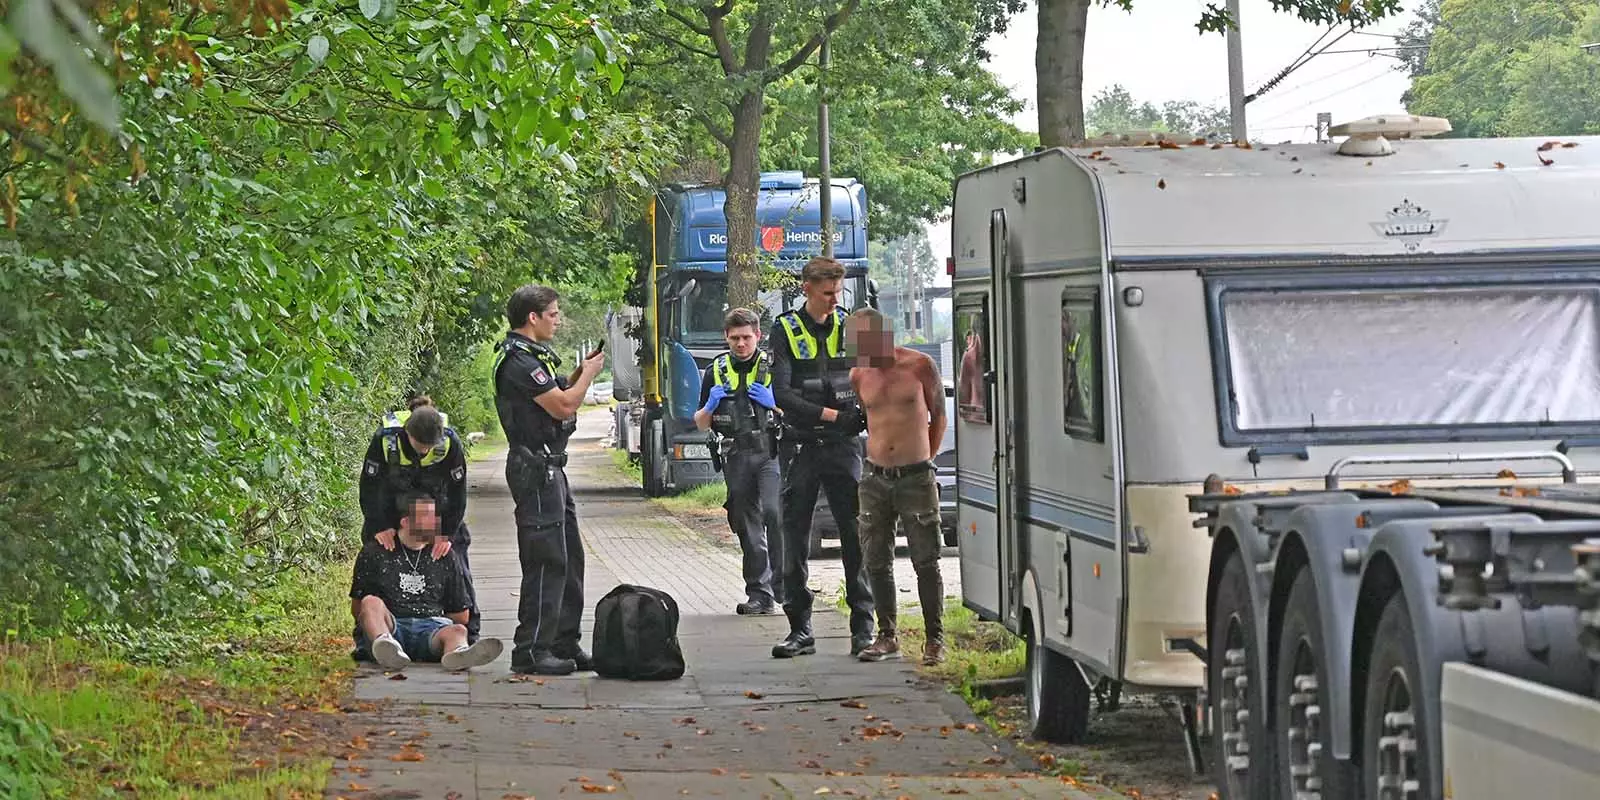 Polizisten haben die beiden Männer festgesetzt, überprüfen ihre Personalien. Foto: Lenthe-Medien